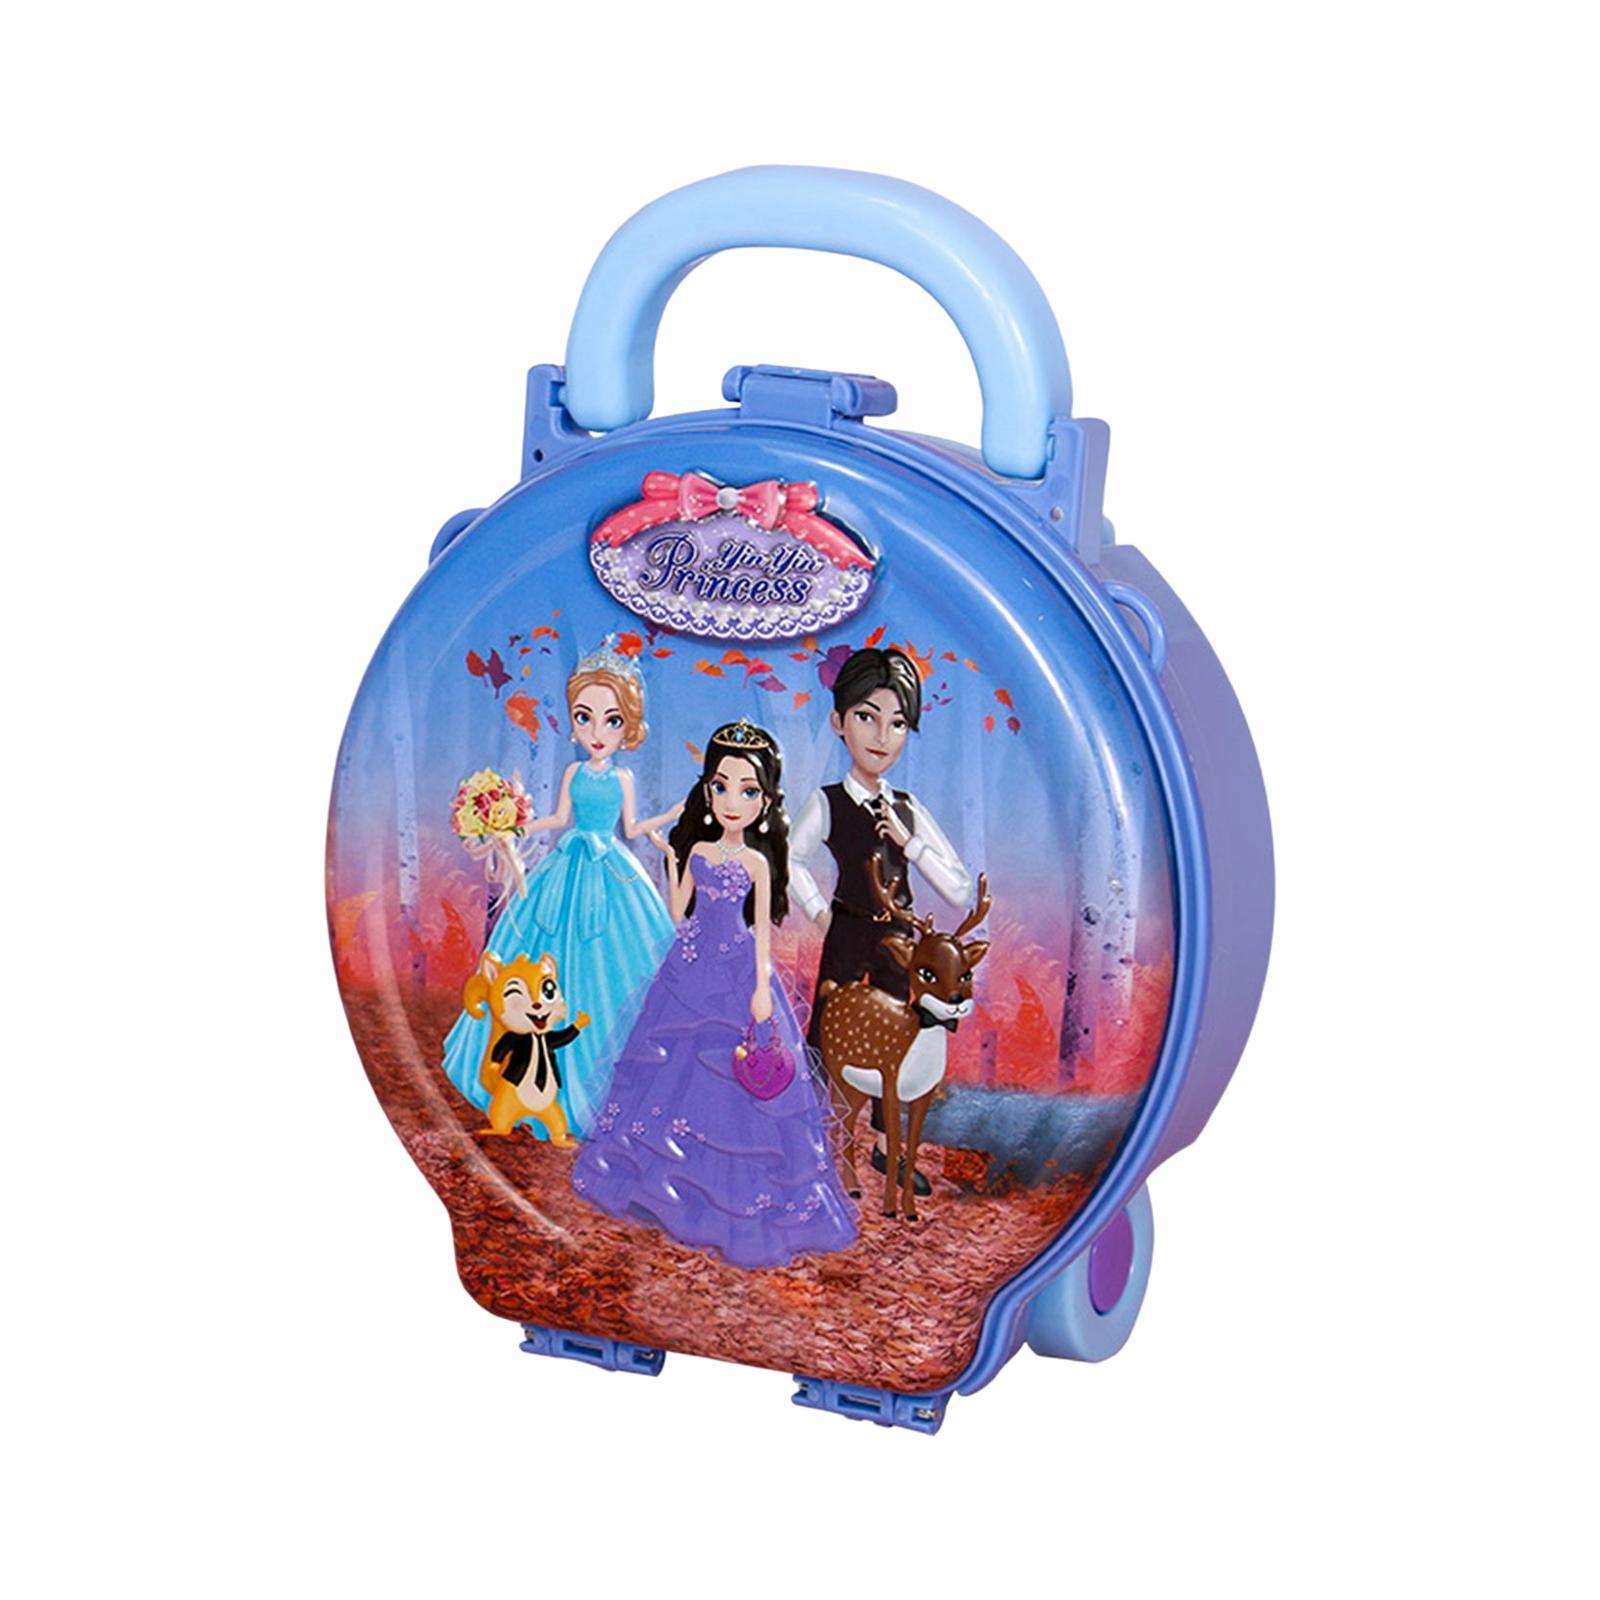 Kids Pretend Trolley Bag Educational for Girls Boys Little Girls Toddler